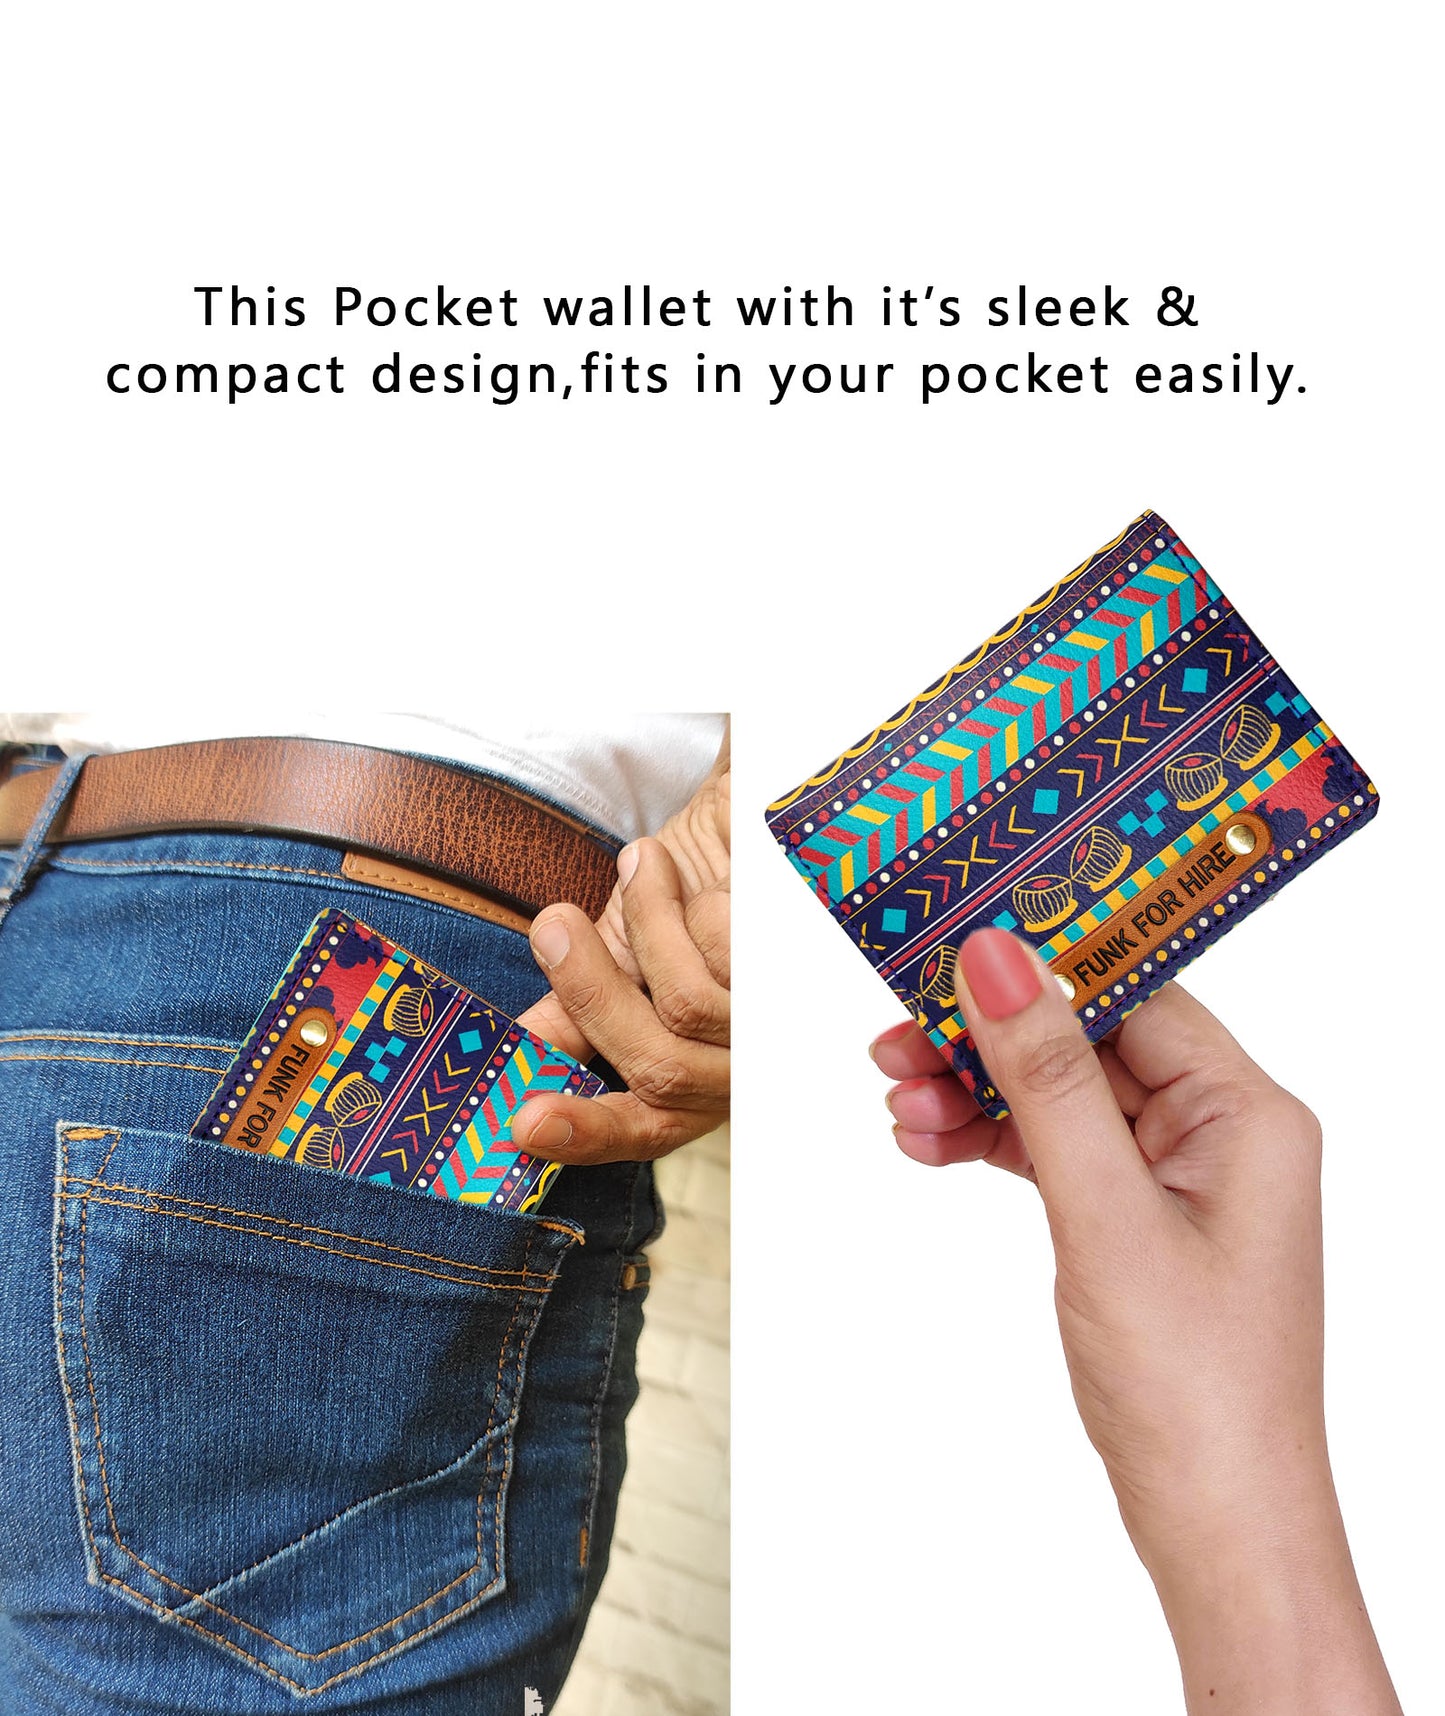 Combo Offers : Music Border Box White Sling Bag & Pocket Multicolour Wallet